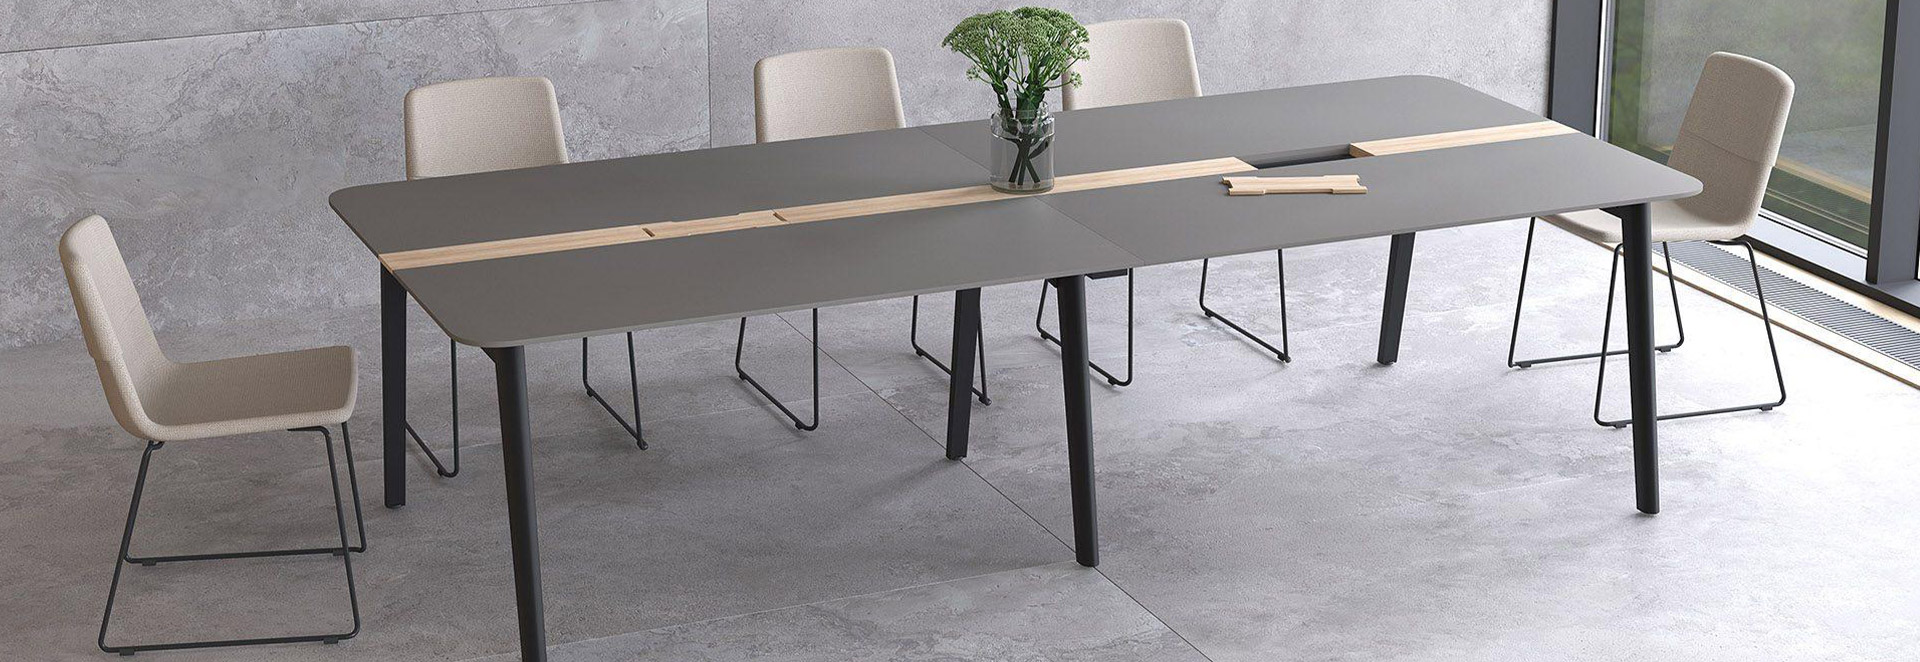 Hoe kies je de juiste conferentietafel voor vergaderingen?